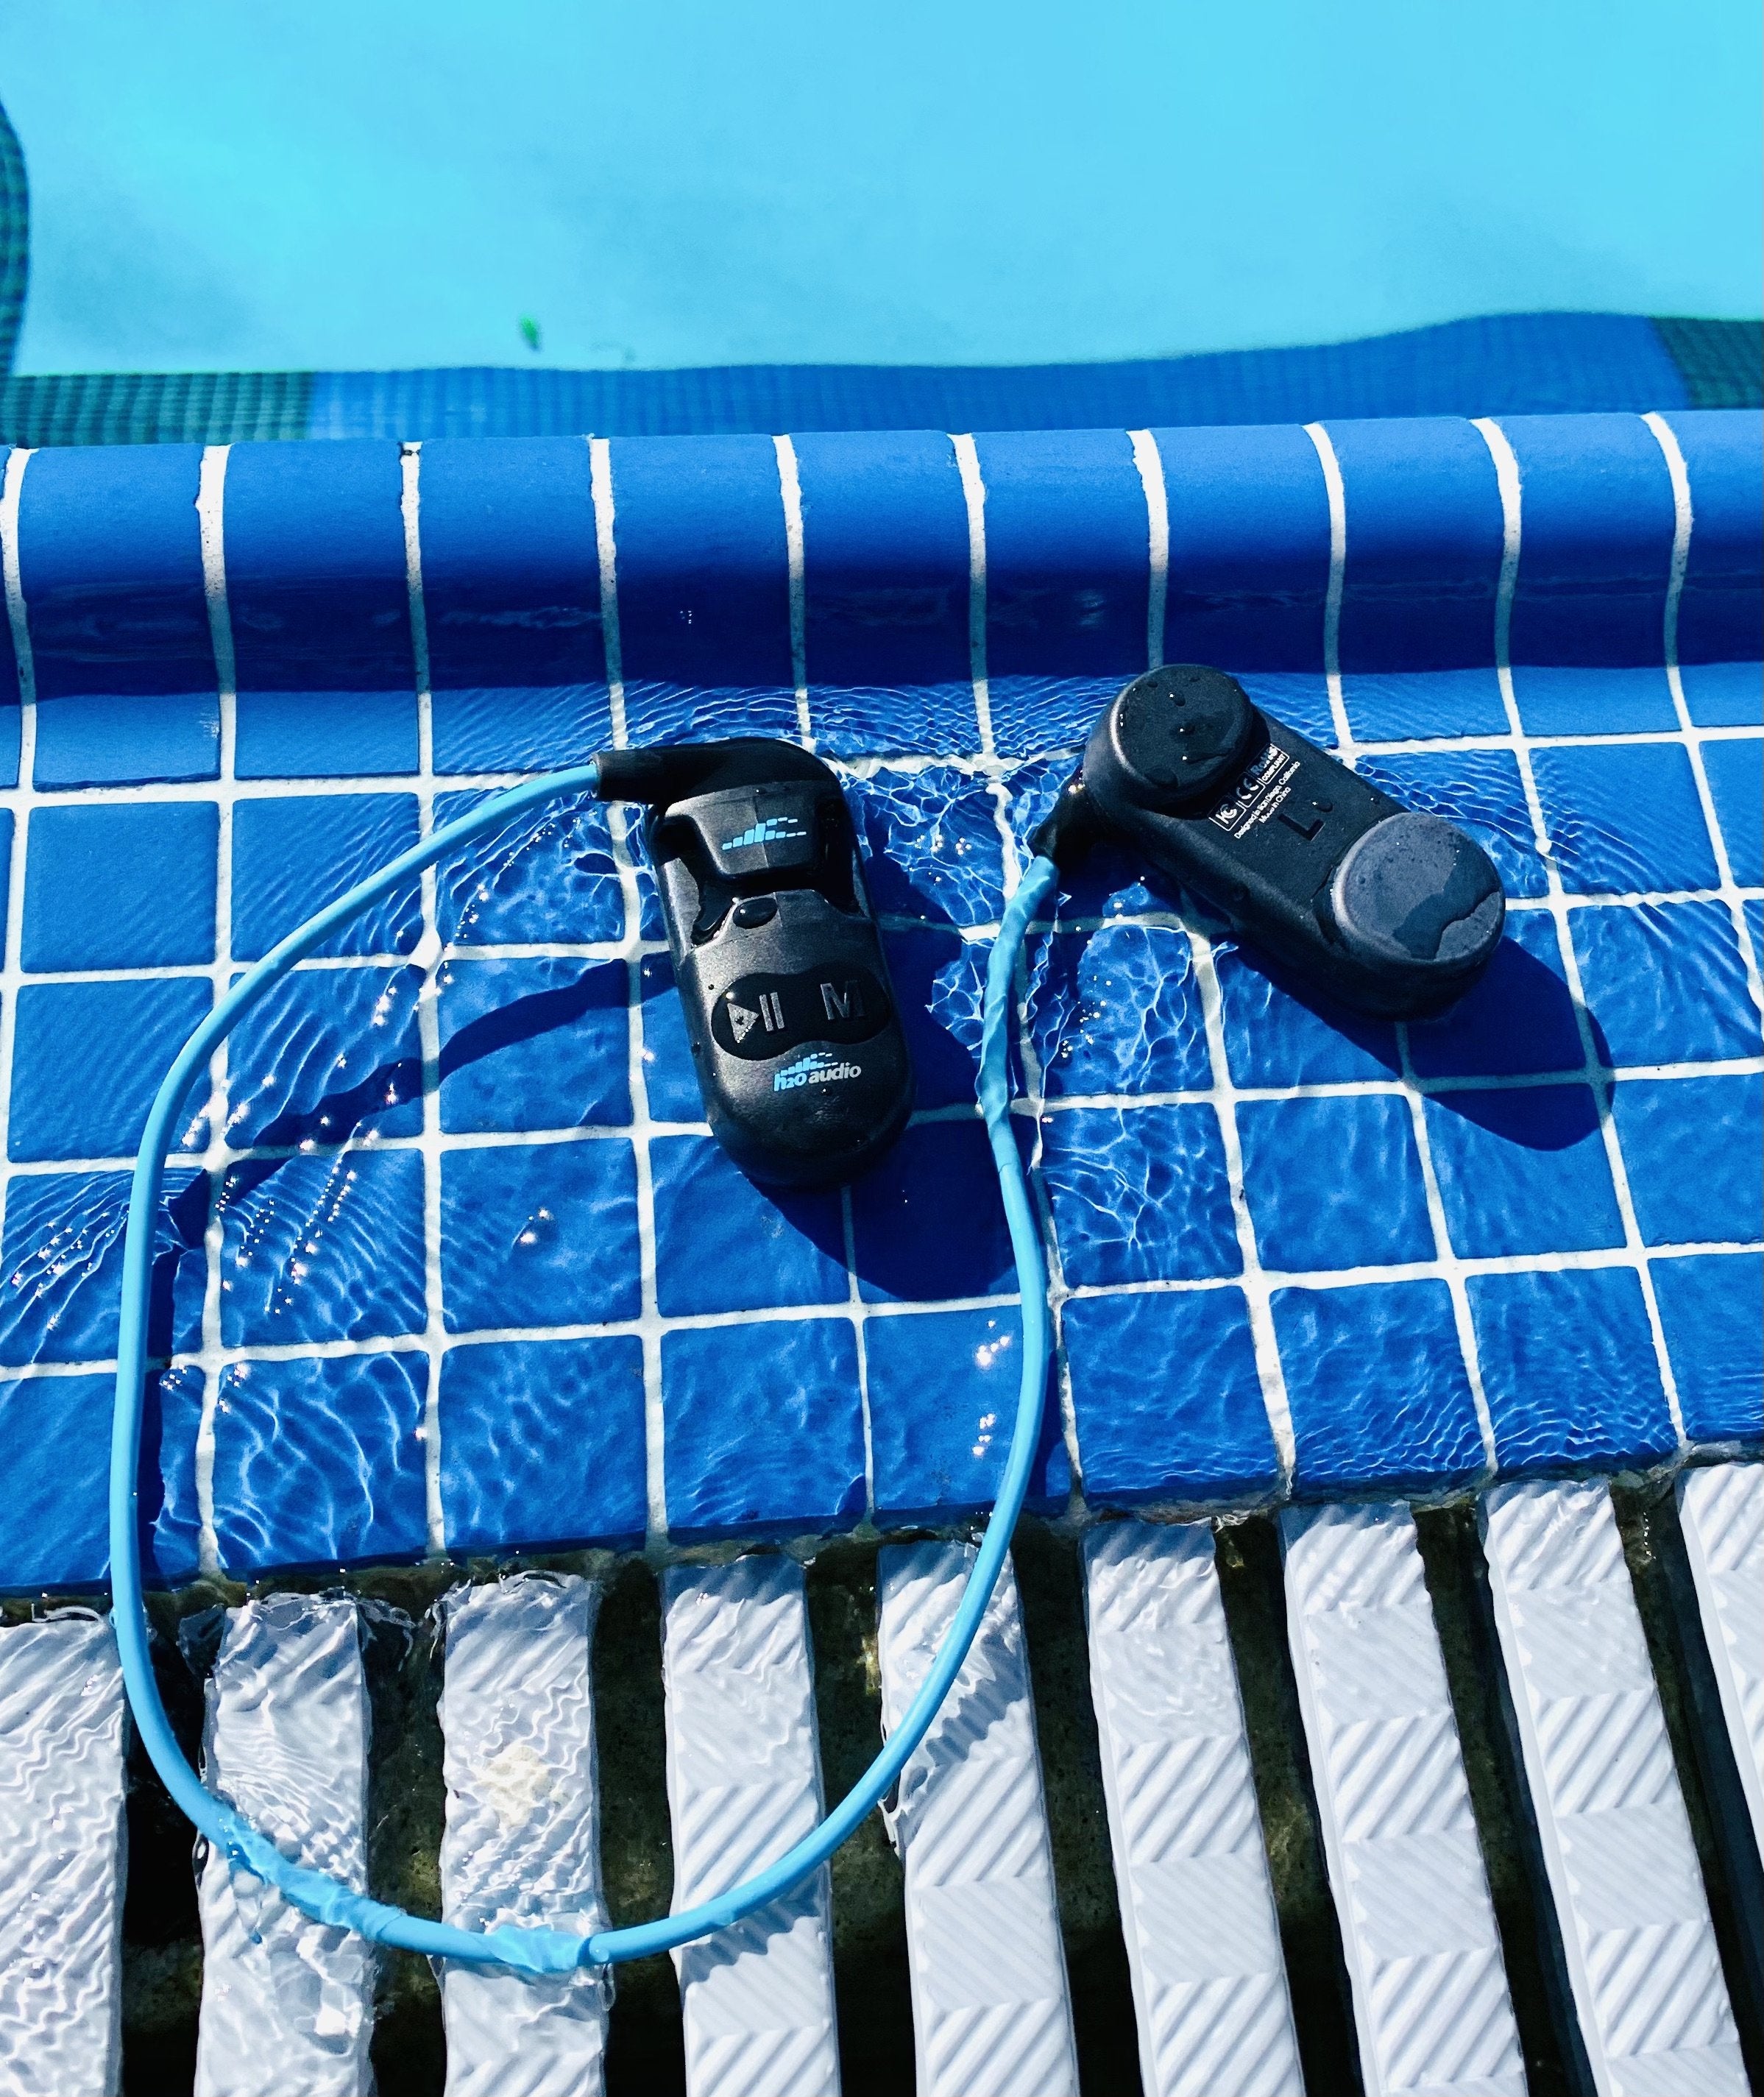 SONAR Underwater Headphones with MP3 & BT